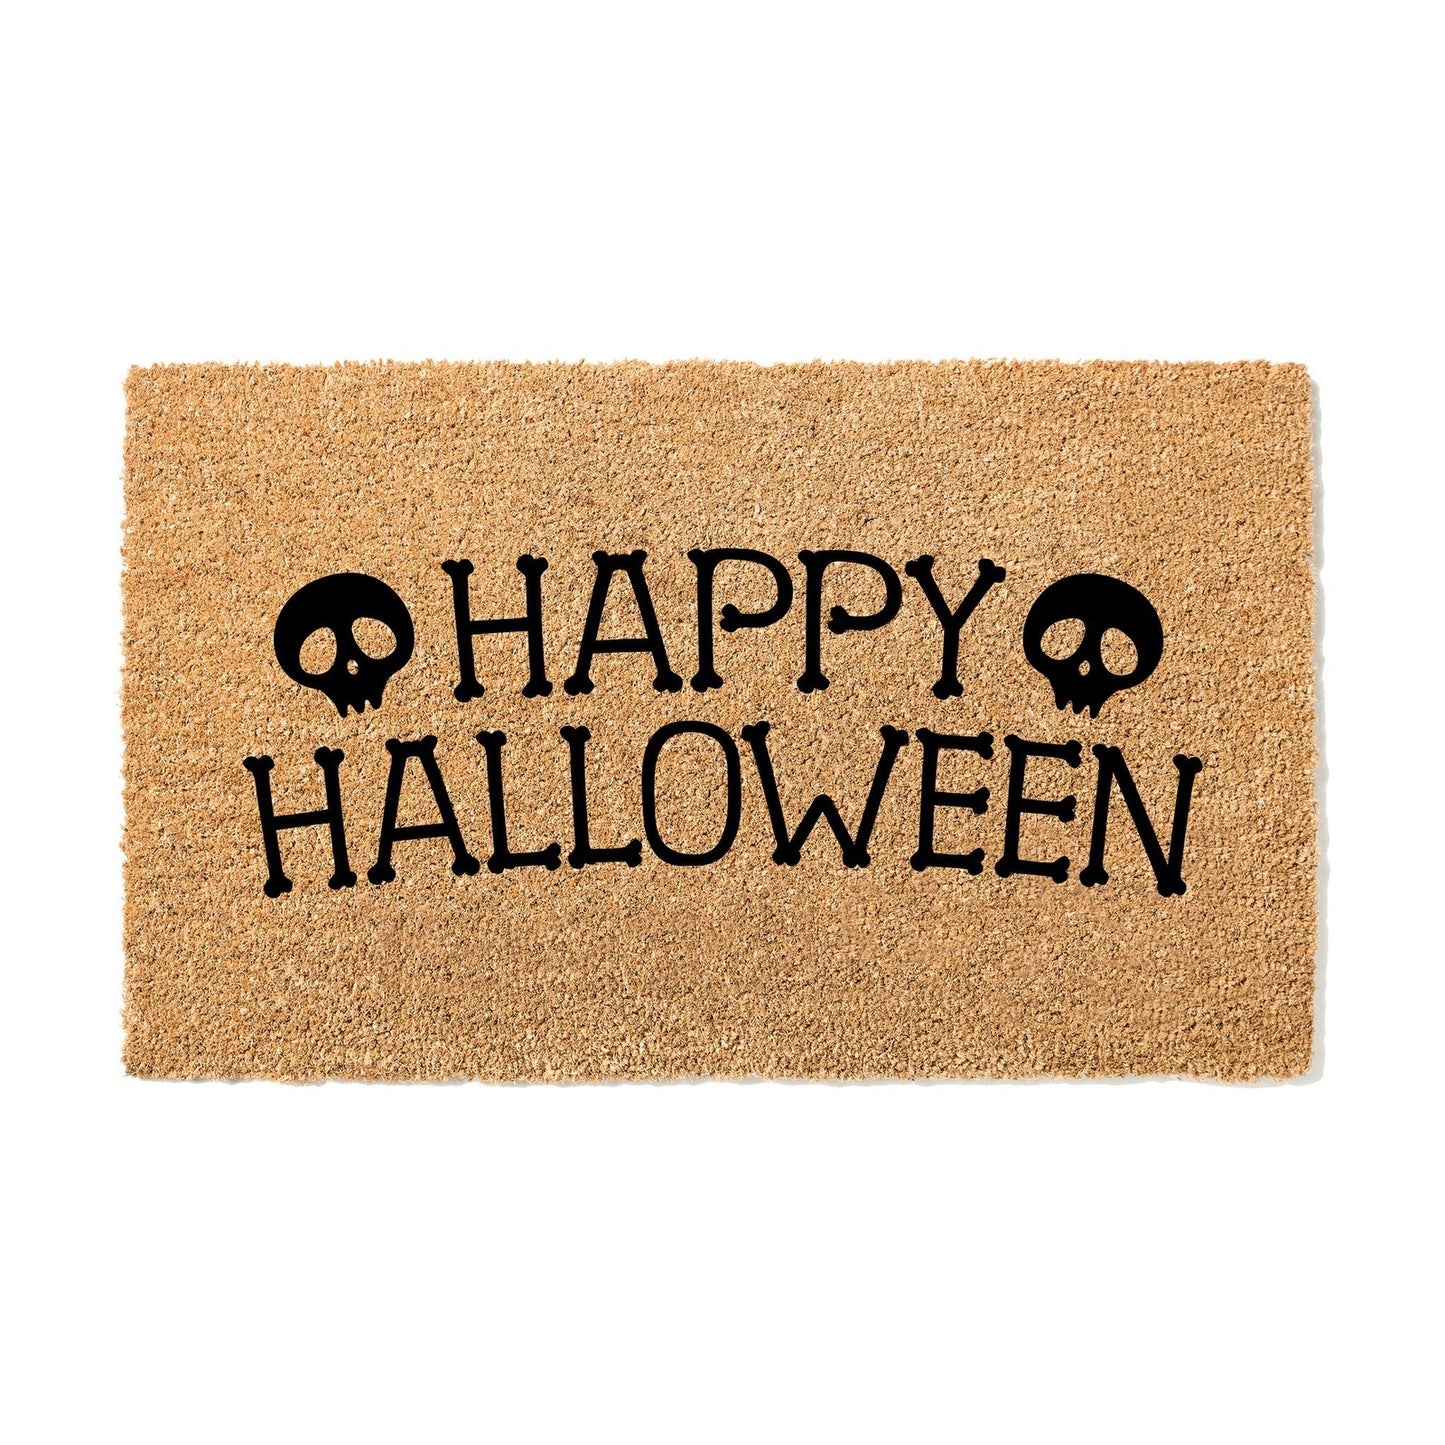 Load image into Gallery viewer, Happy Halloween Doormat
